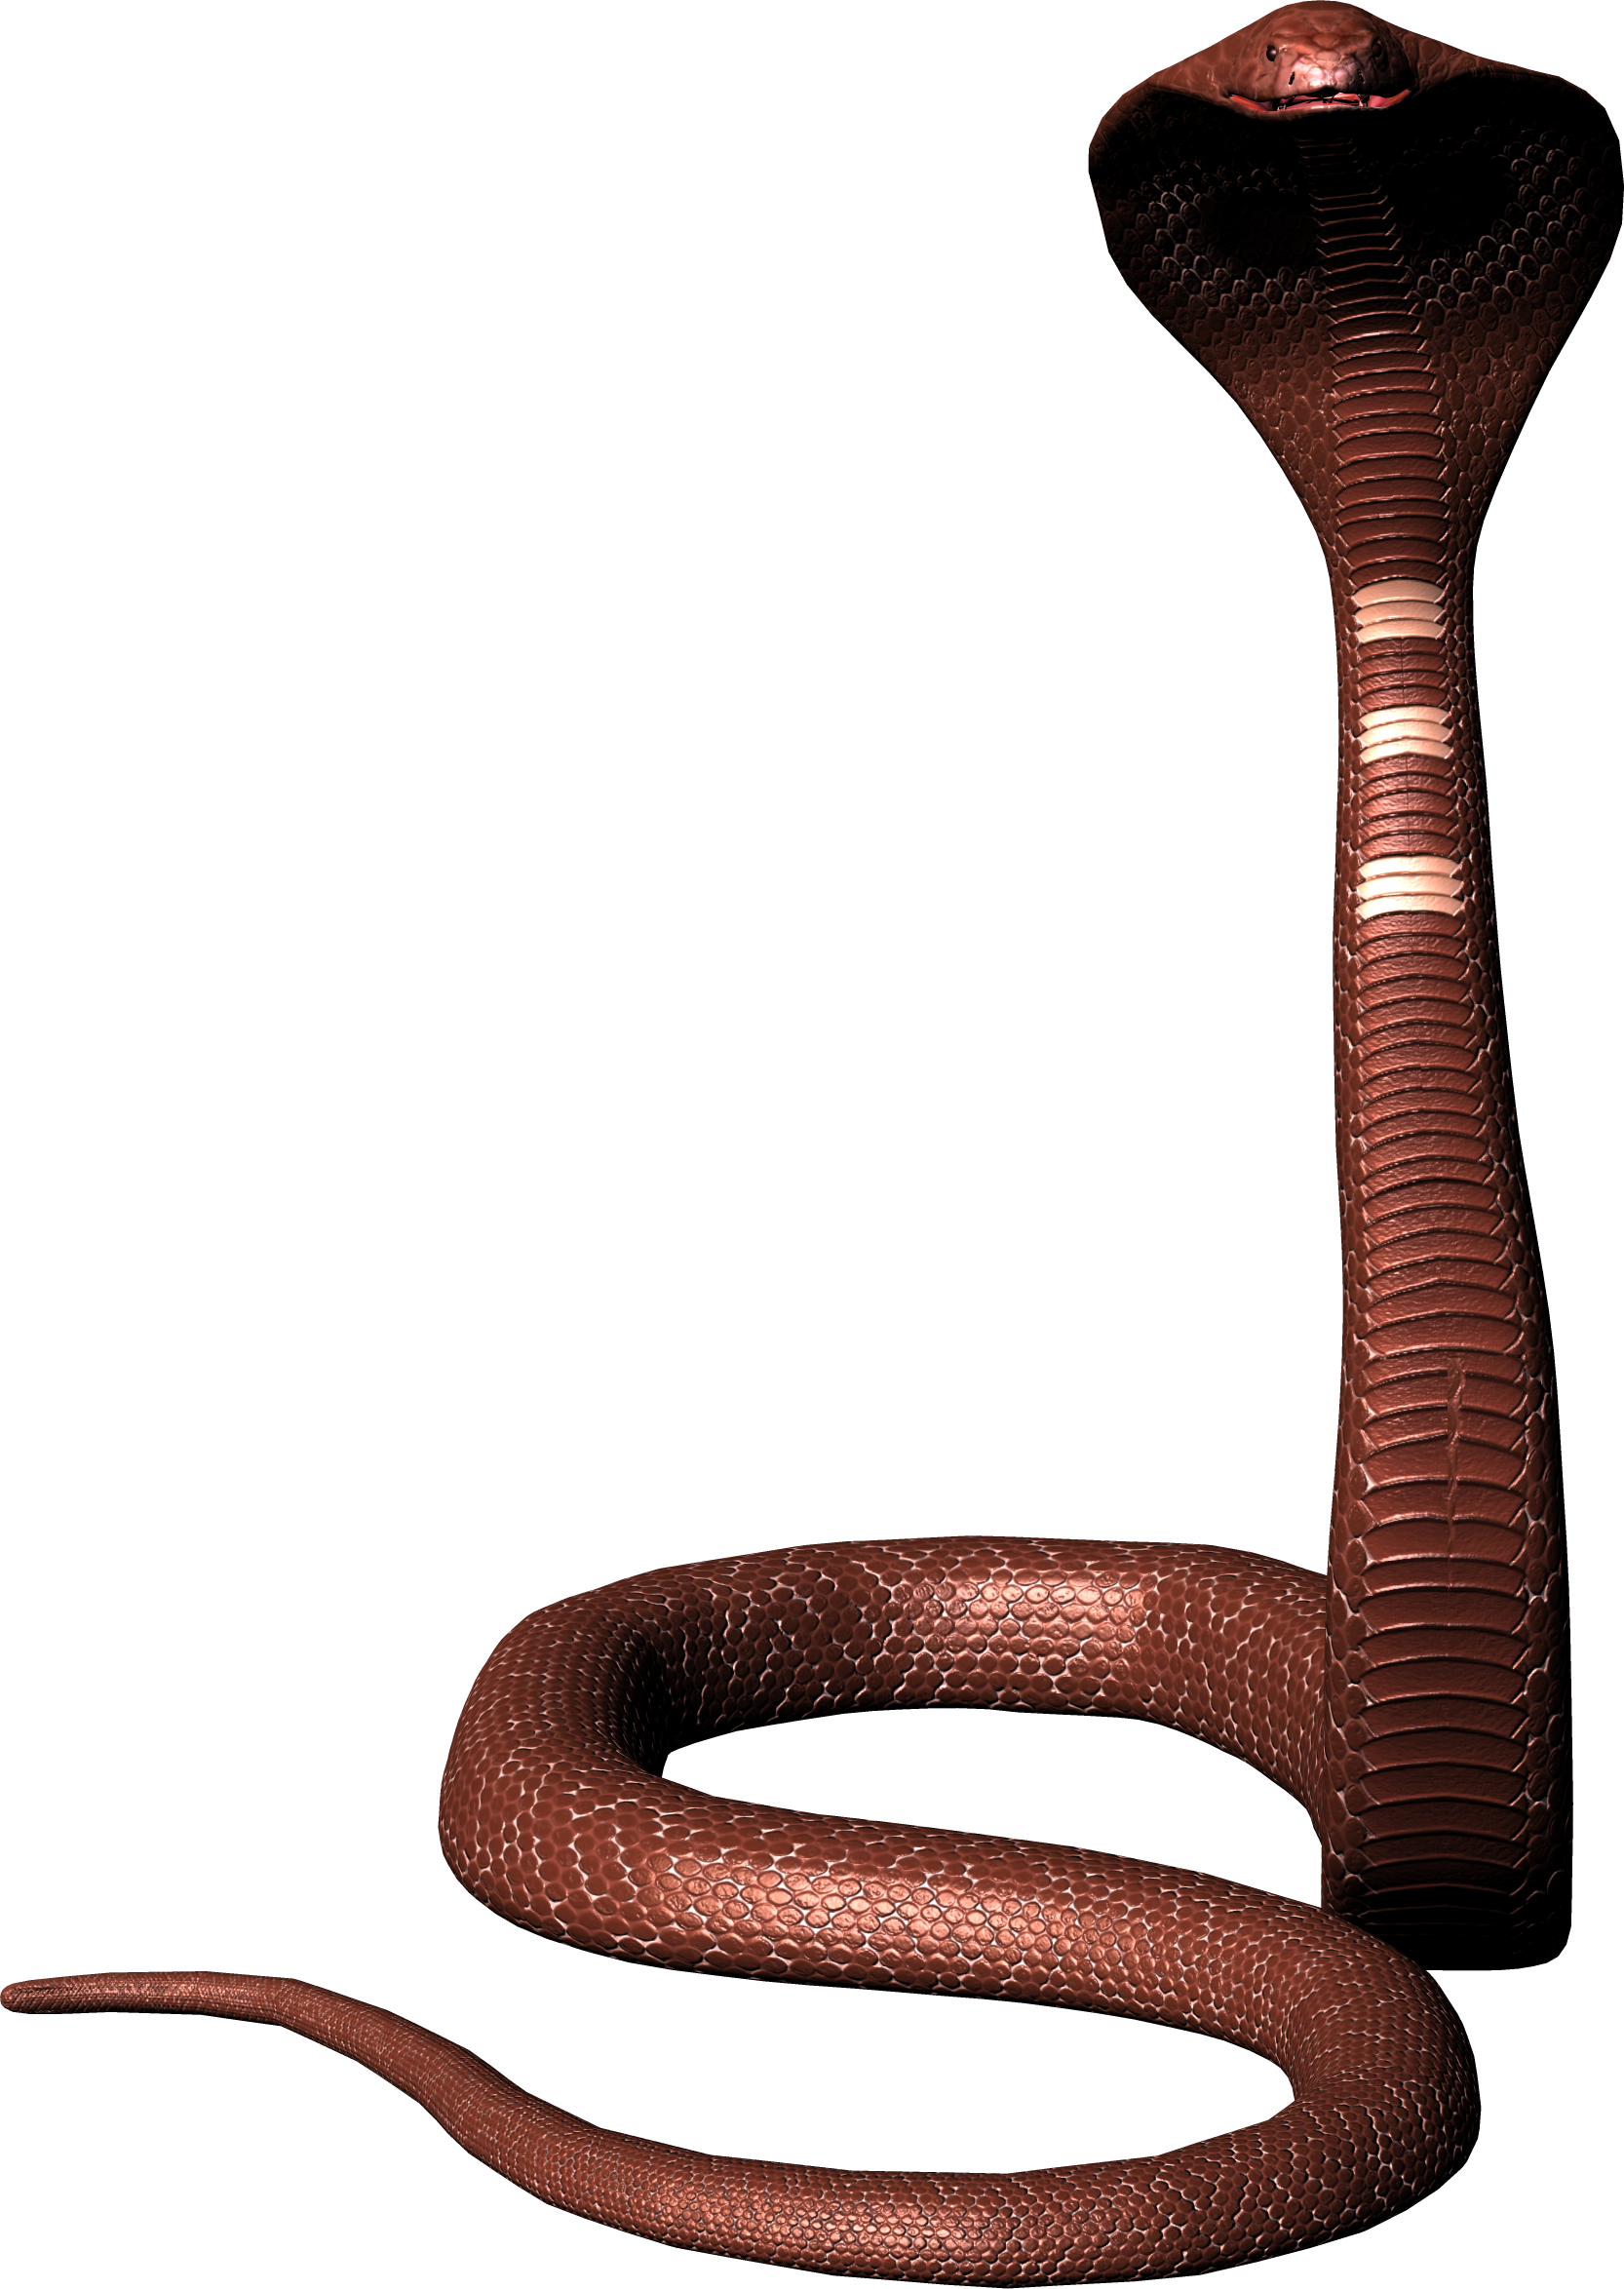 Viper змея PNG изображения фон